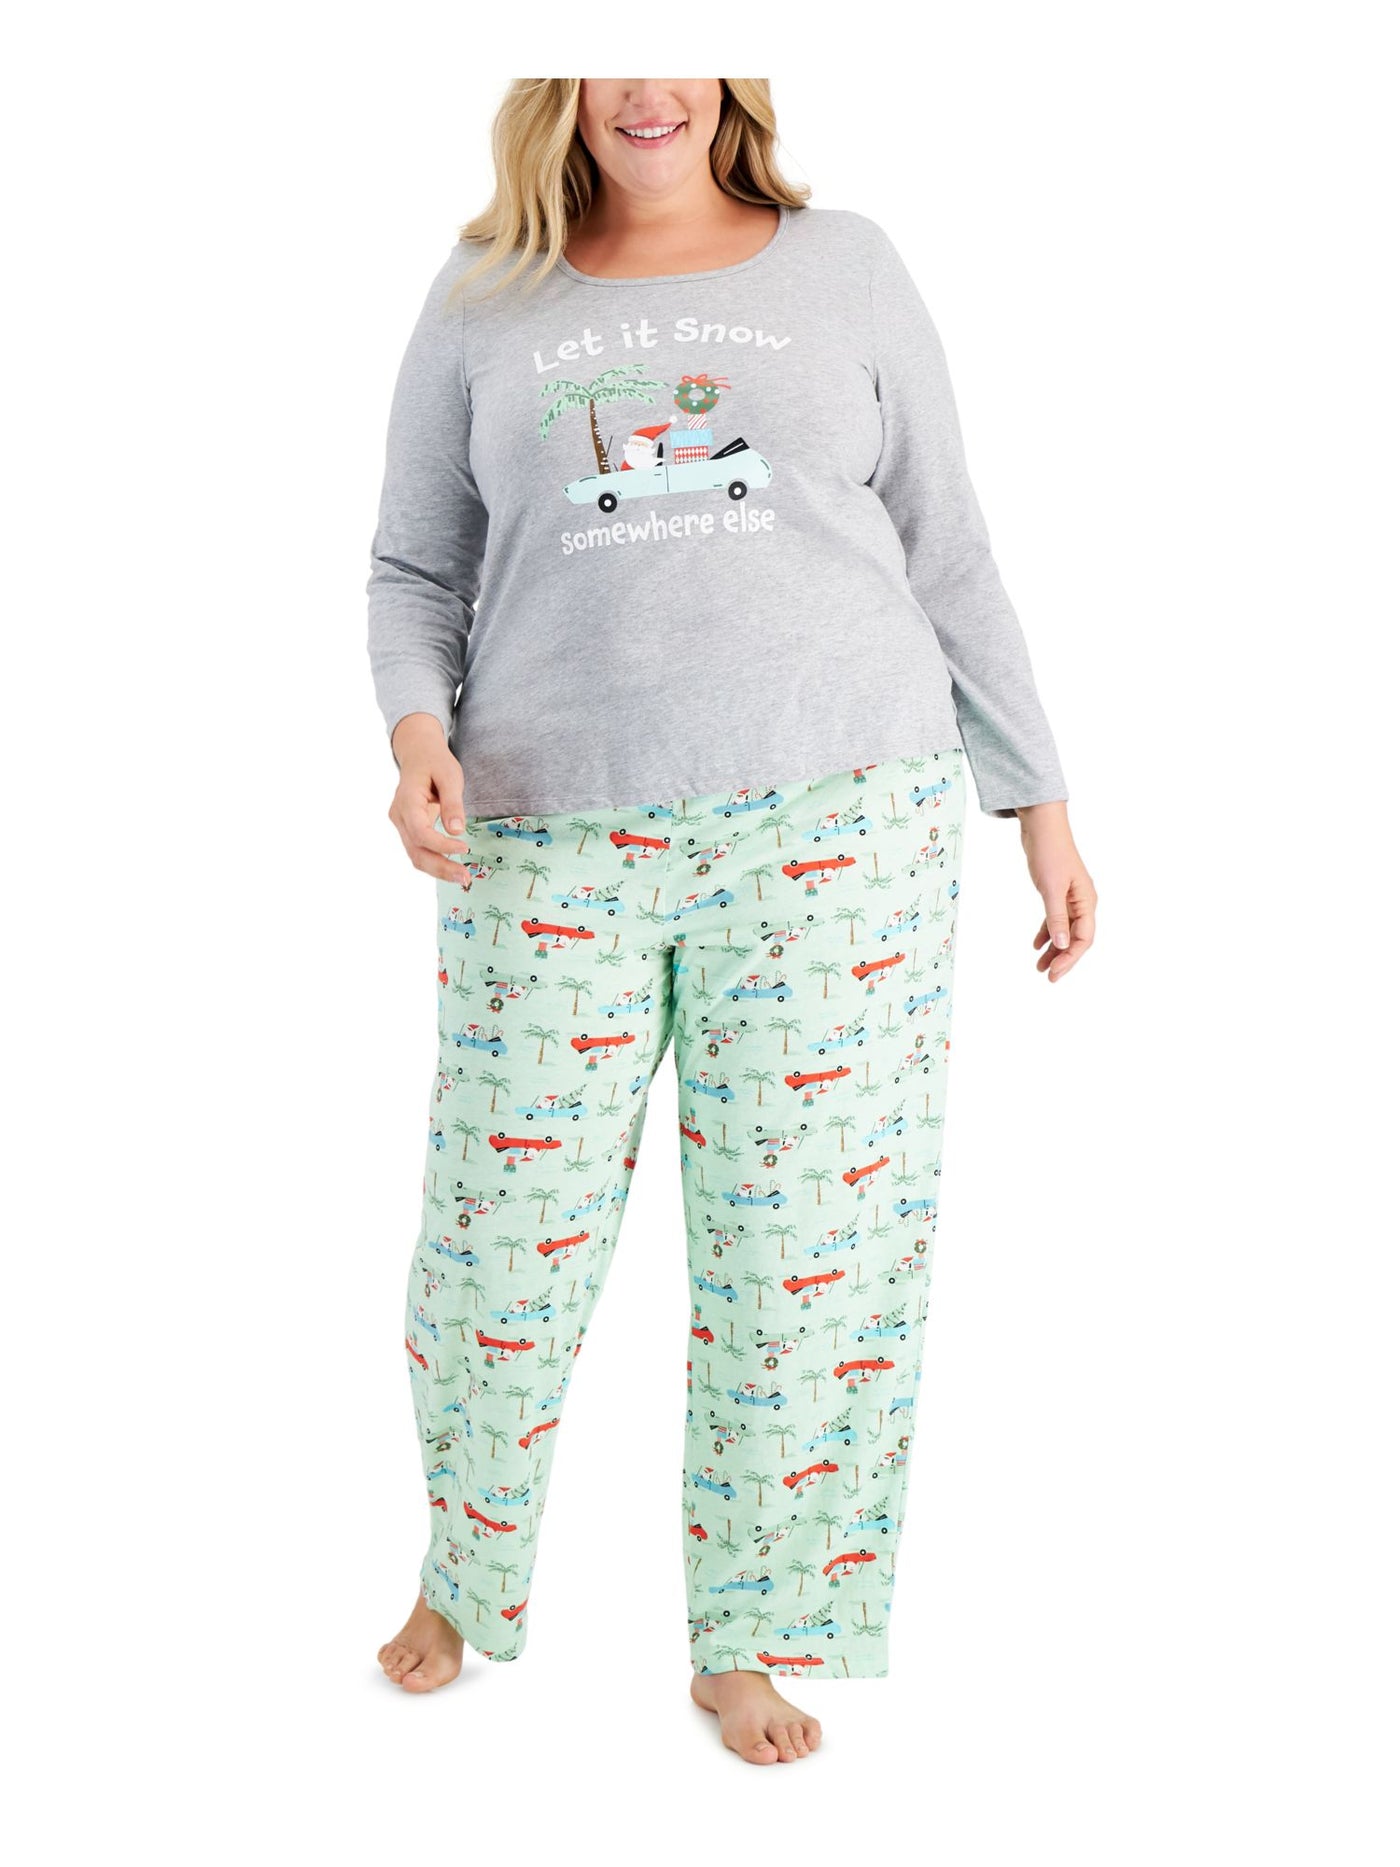 FAMILY PJs Womens Tropical Santa Green Graphic Elastic Band Long Sleeve T-Shirt Top Straight leg Pants Knit Pajamas 2X